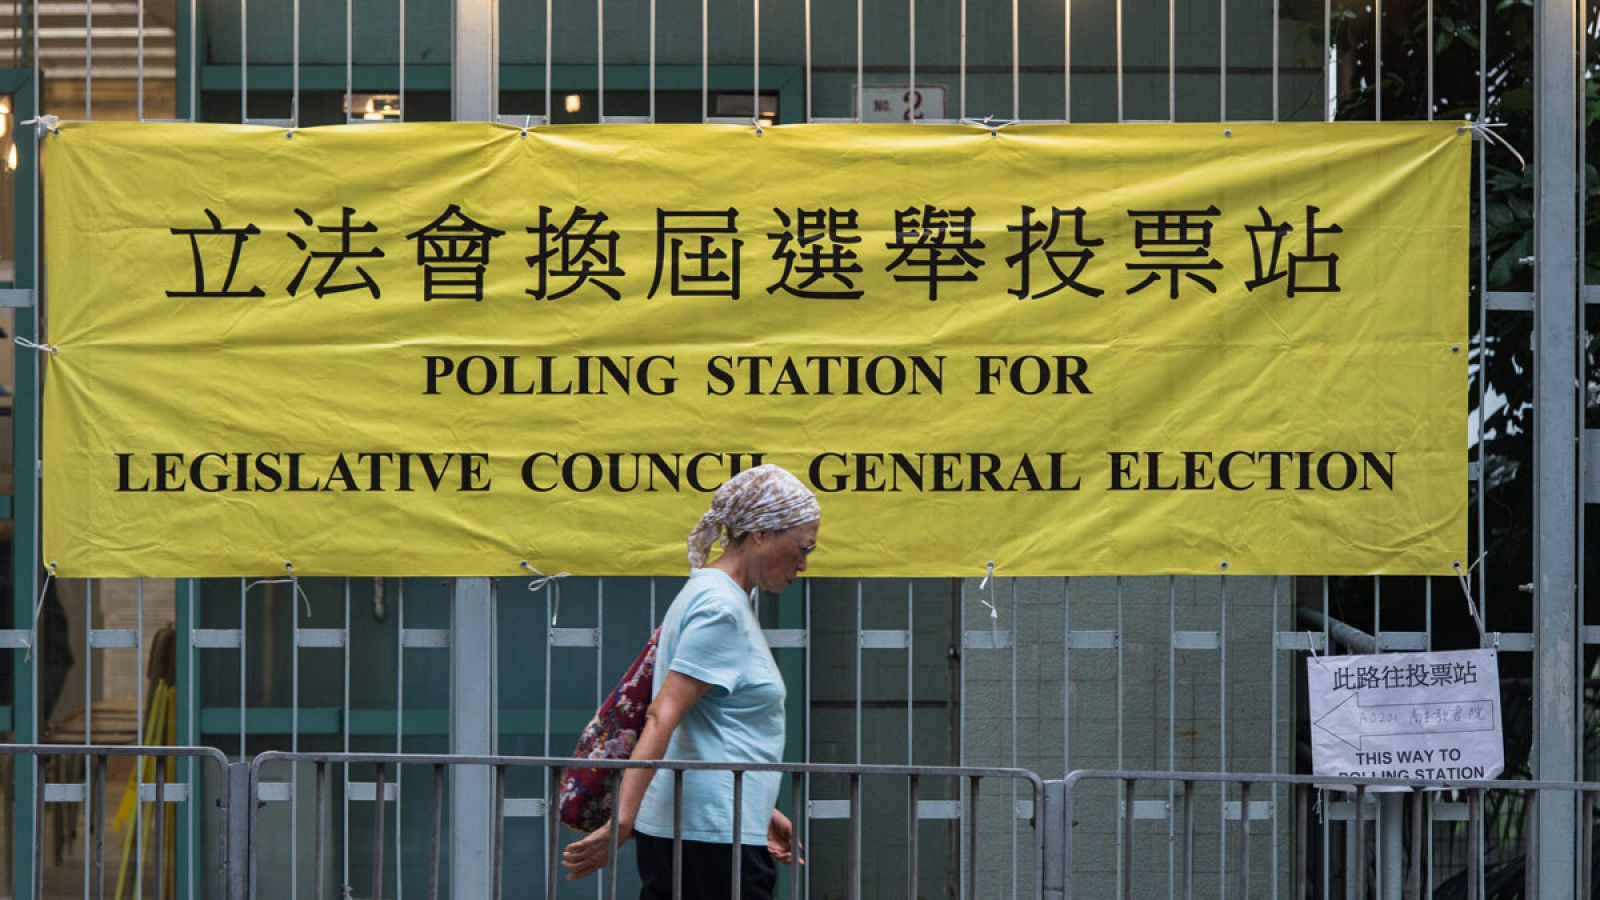 Una mujer camina frente a un cartel de un colegio electoral en Hong Kong.